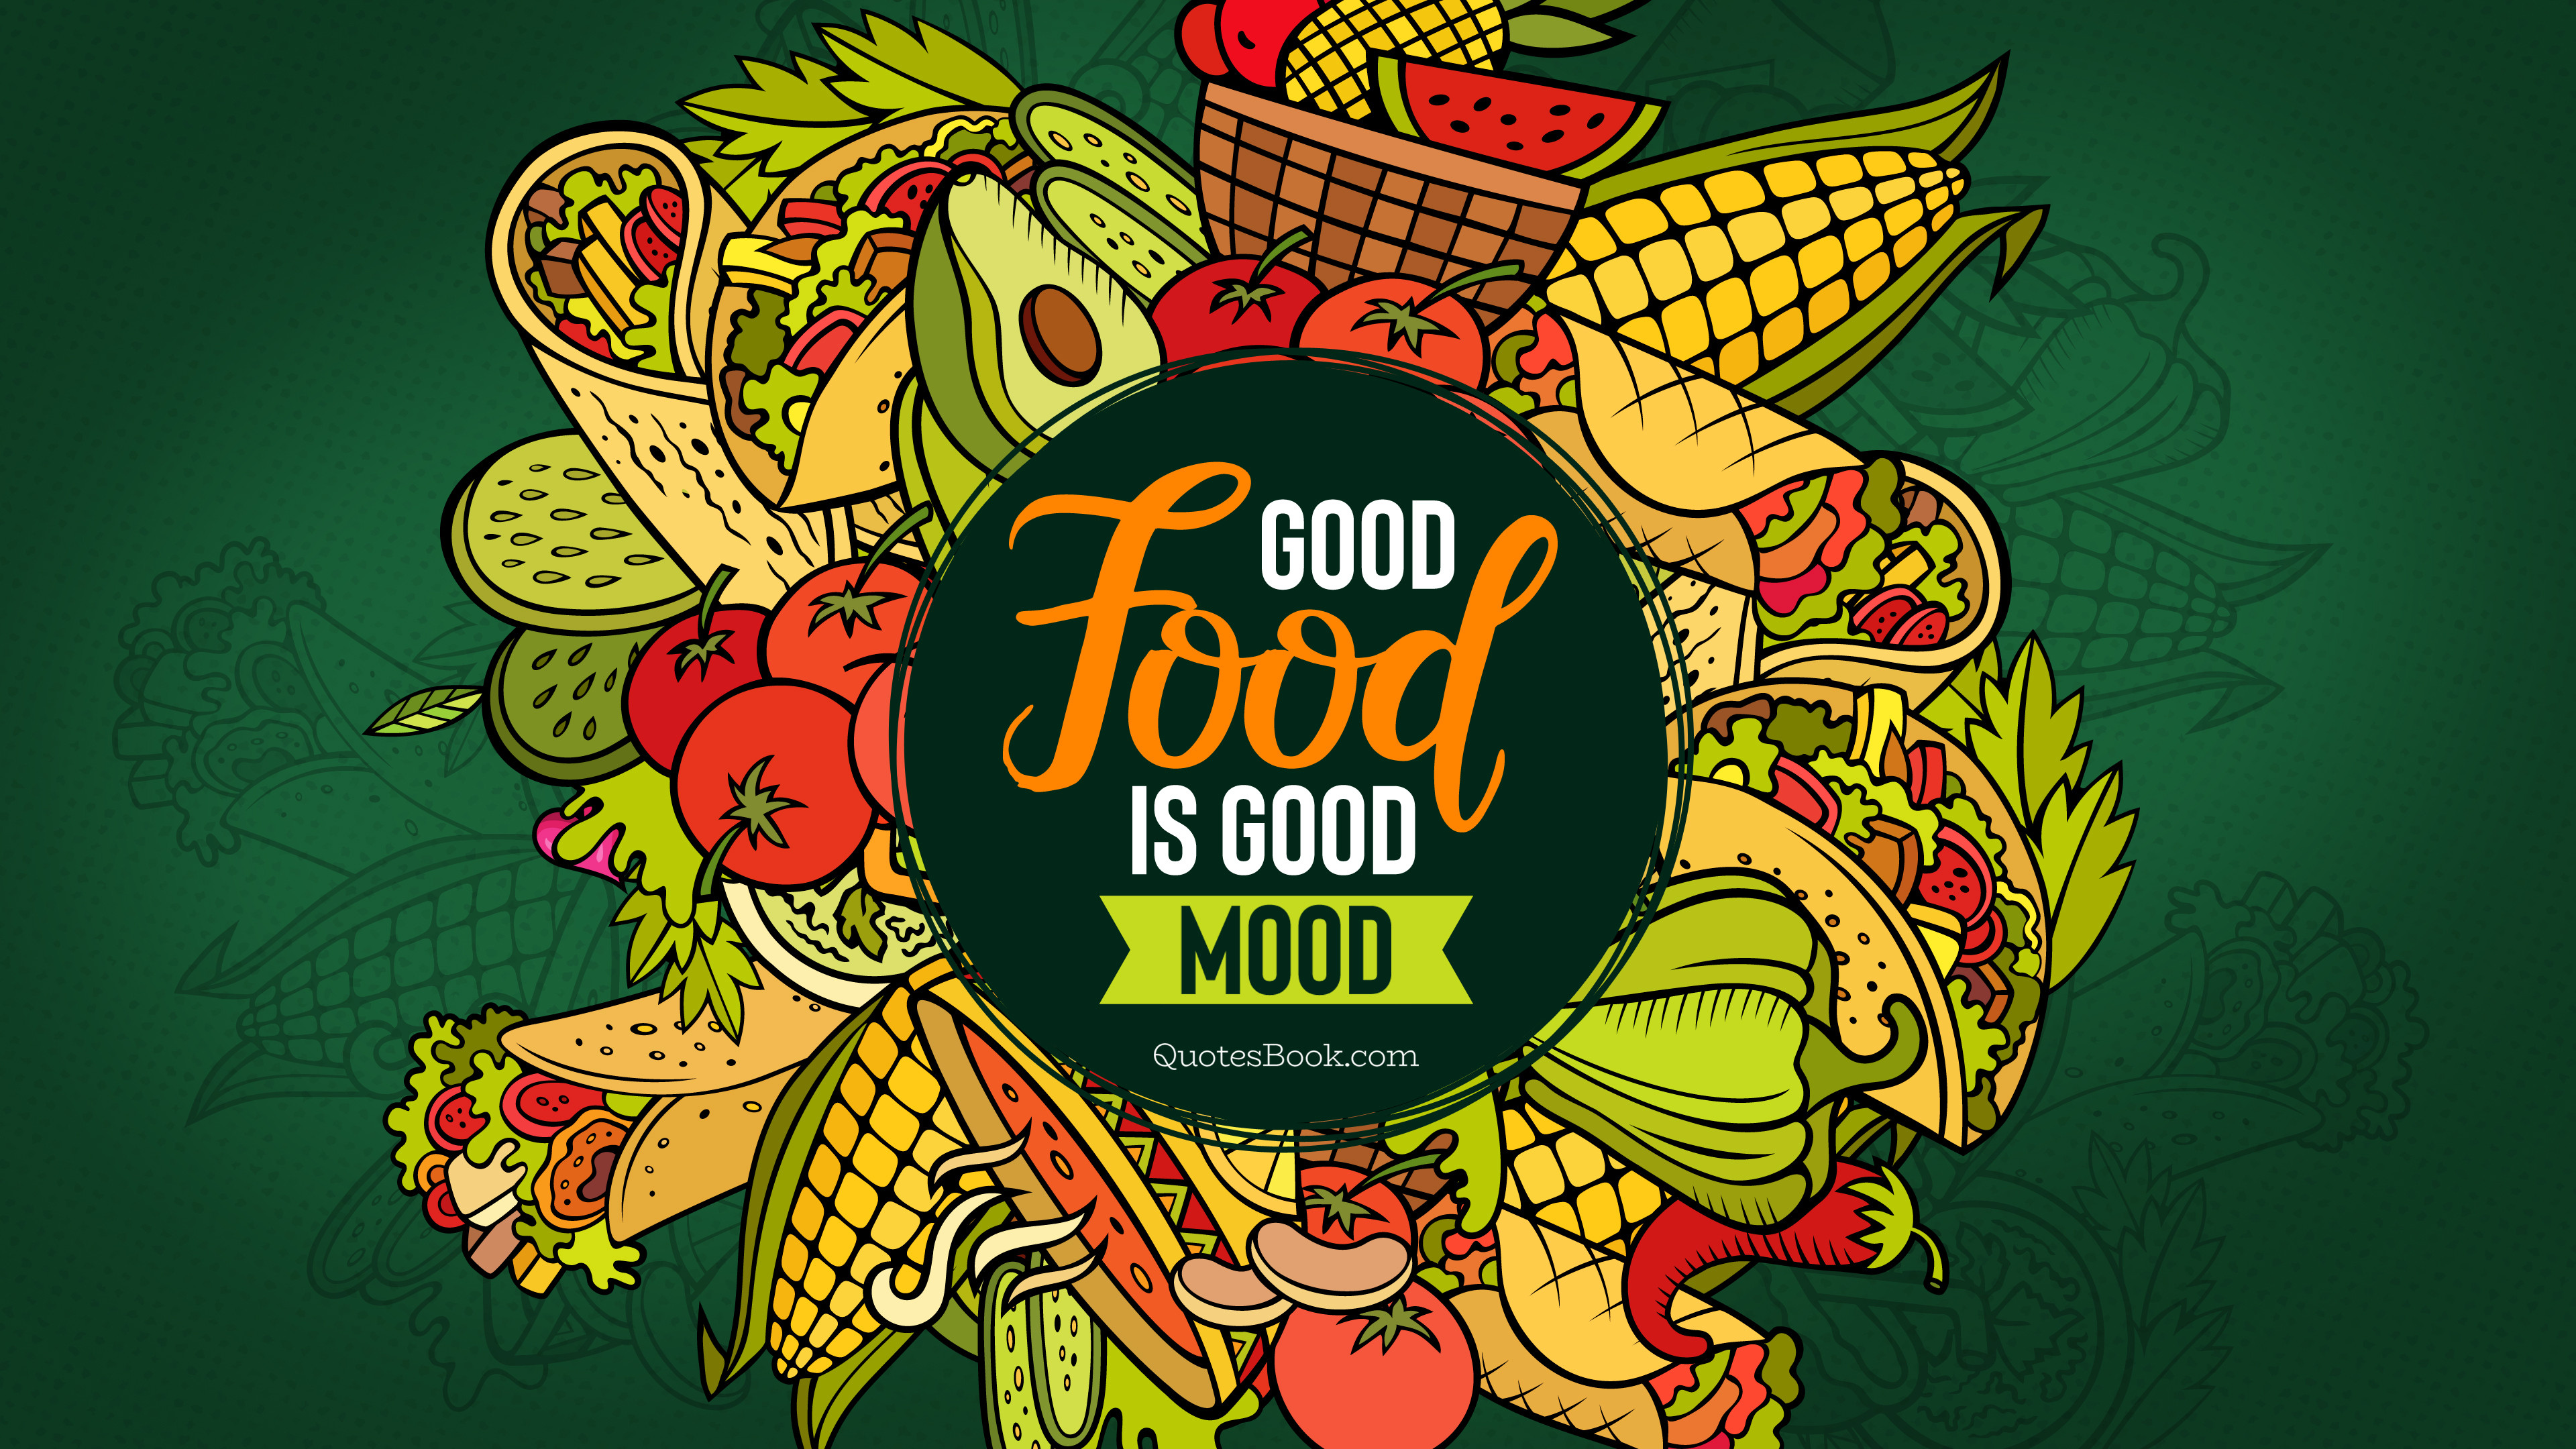 Good food is a good mood